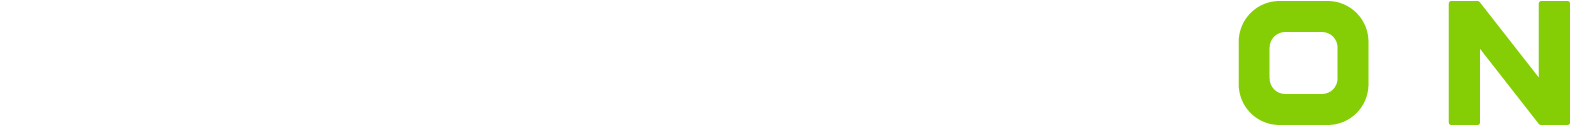 RumbleON
 logo large for dark backgrounds (transparent PNG)